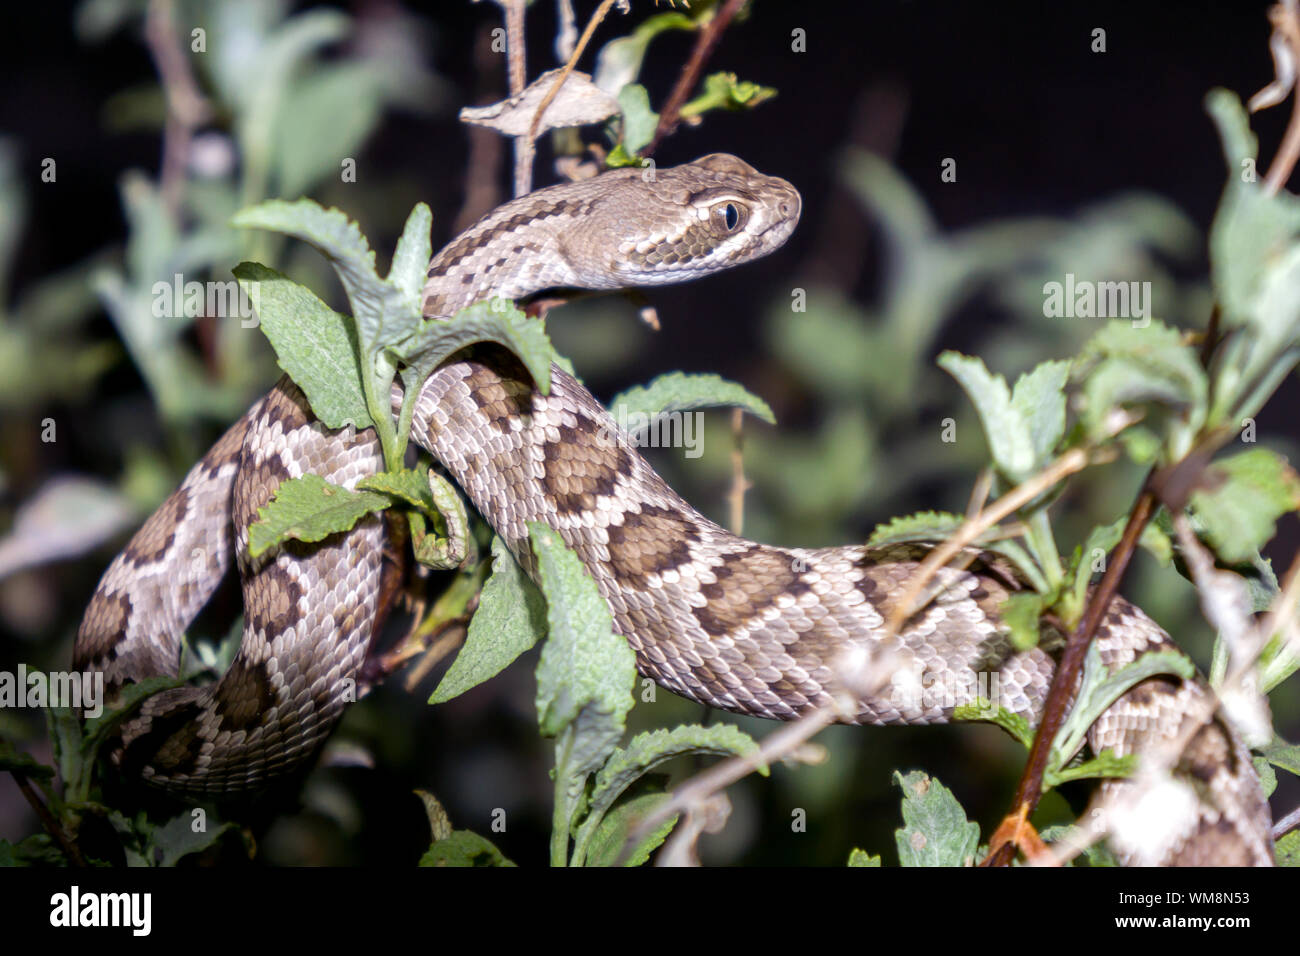 Mojave Rattlesnake in Arizona Desert - Venomous Pit Viper Snake Stock Photo